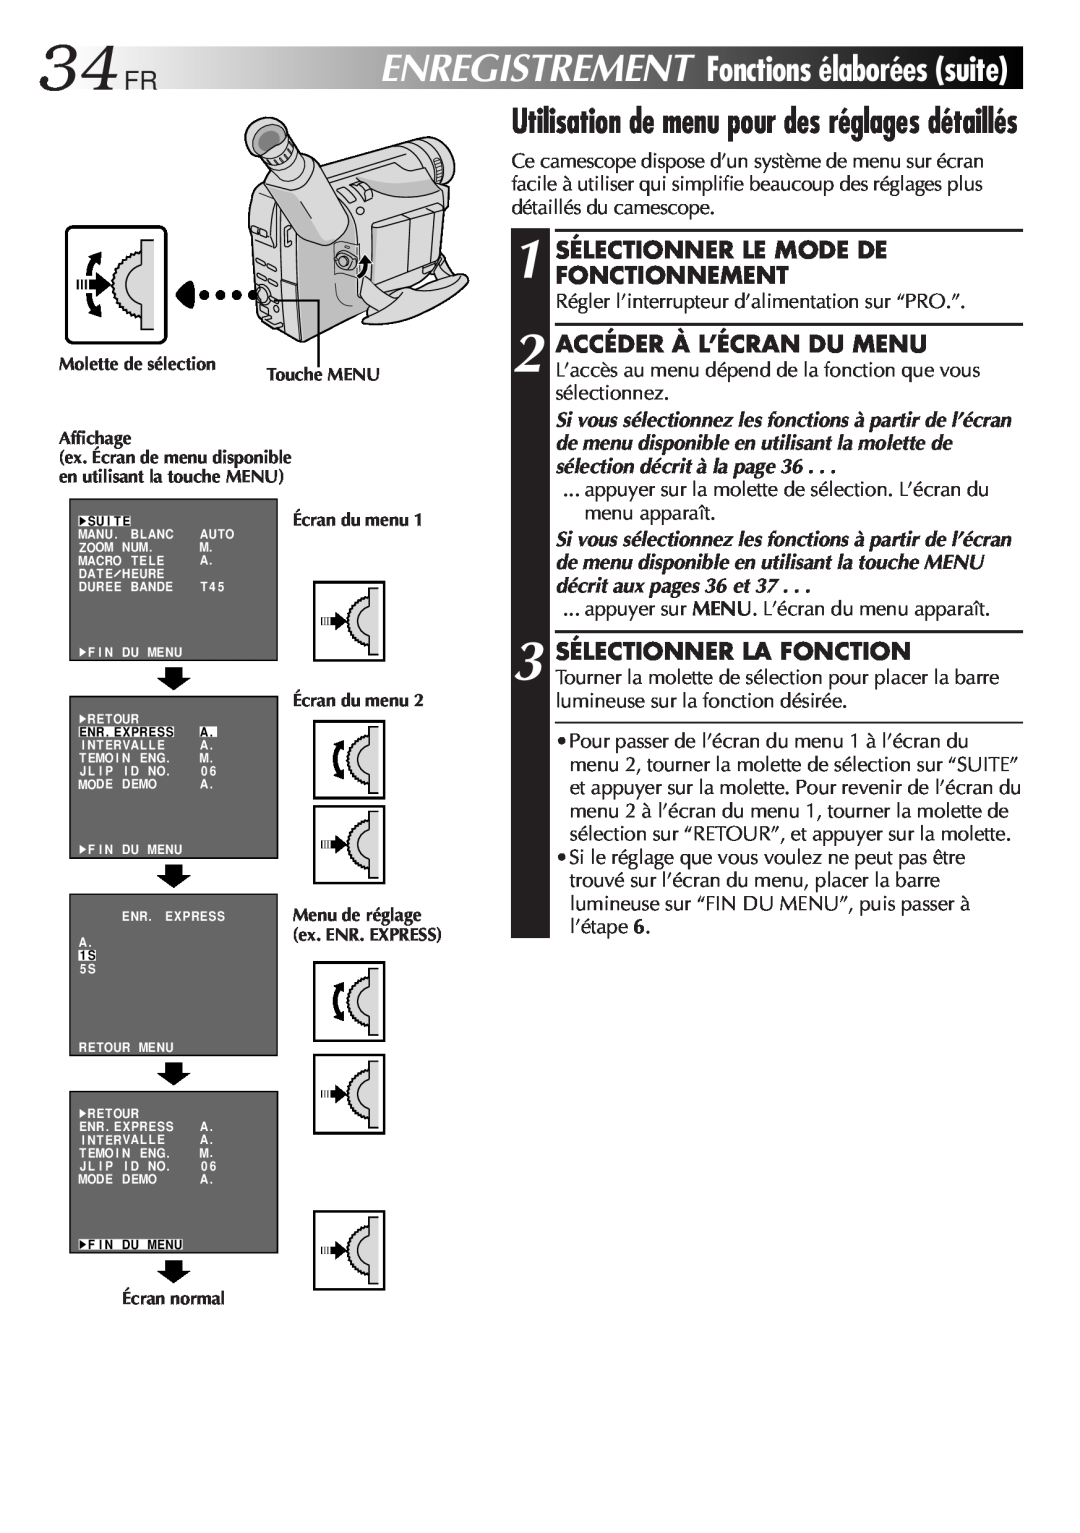 JVC GR-FXM106S manual 34FR, 1 SÉLECTIONNER LE MODE DE FONCTIONNEMENT, sélection décrit à la page 